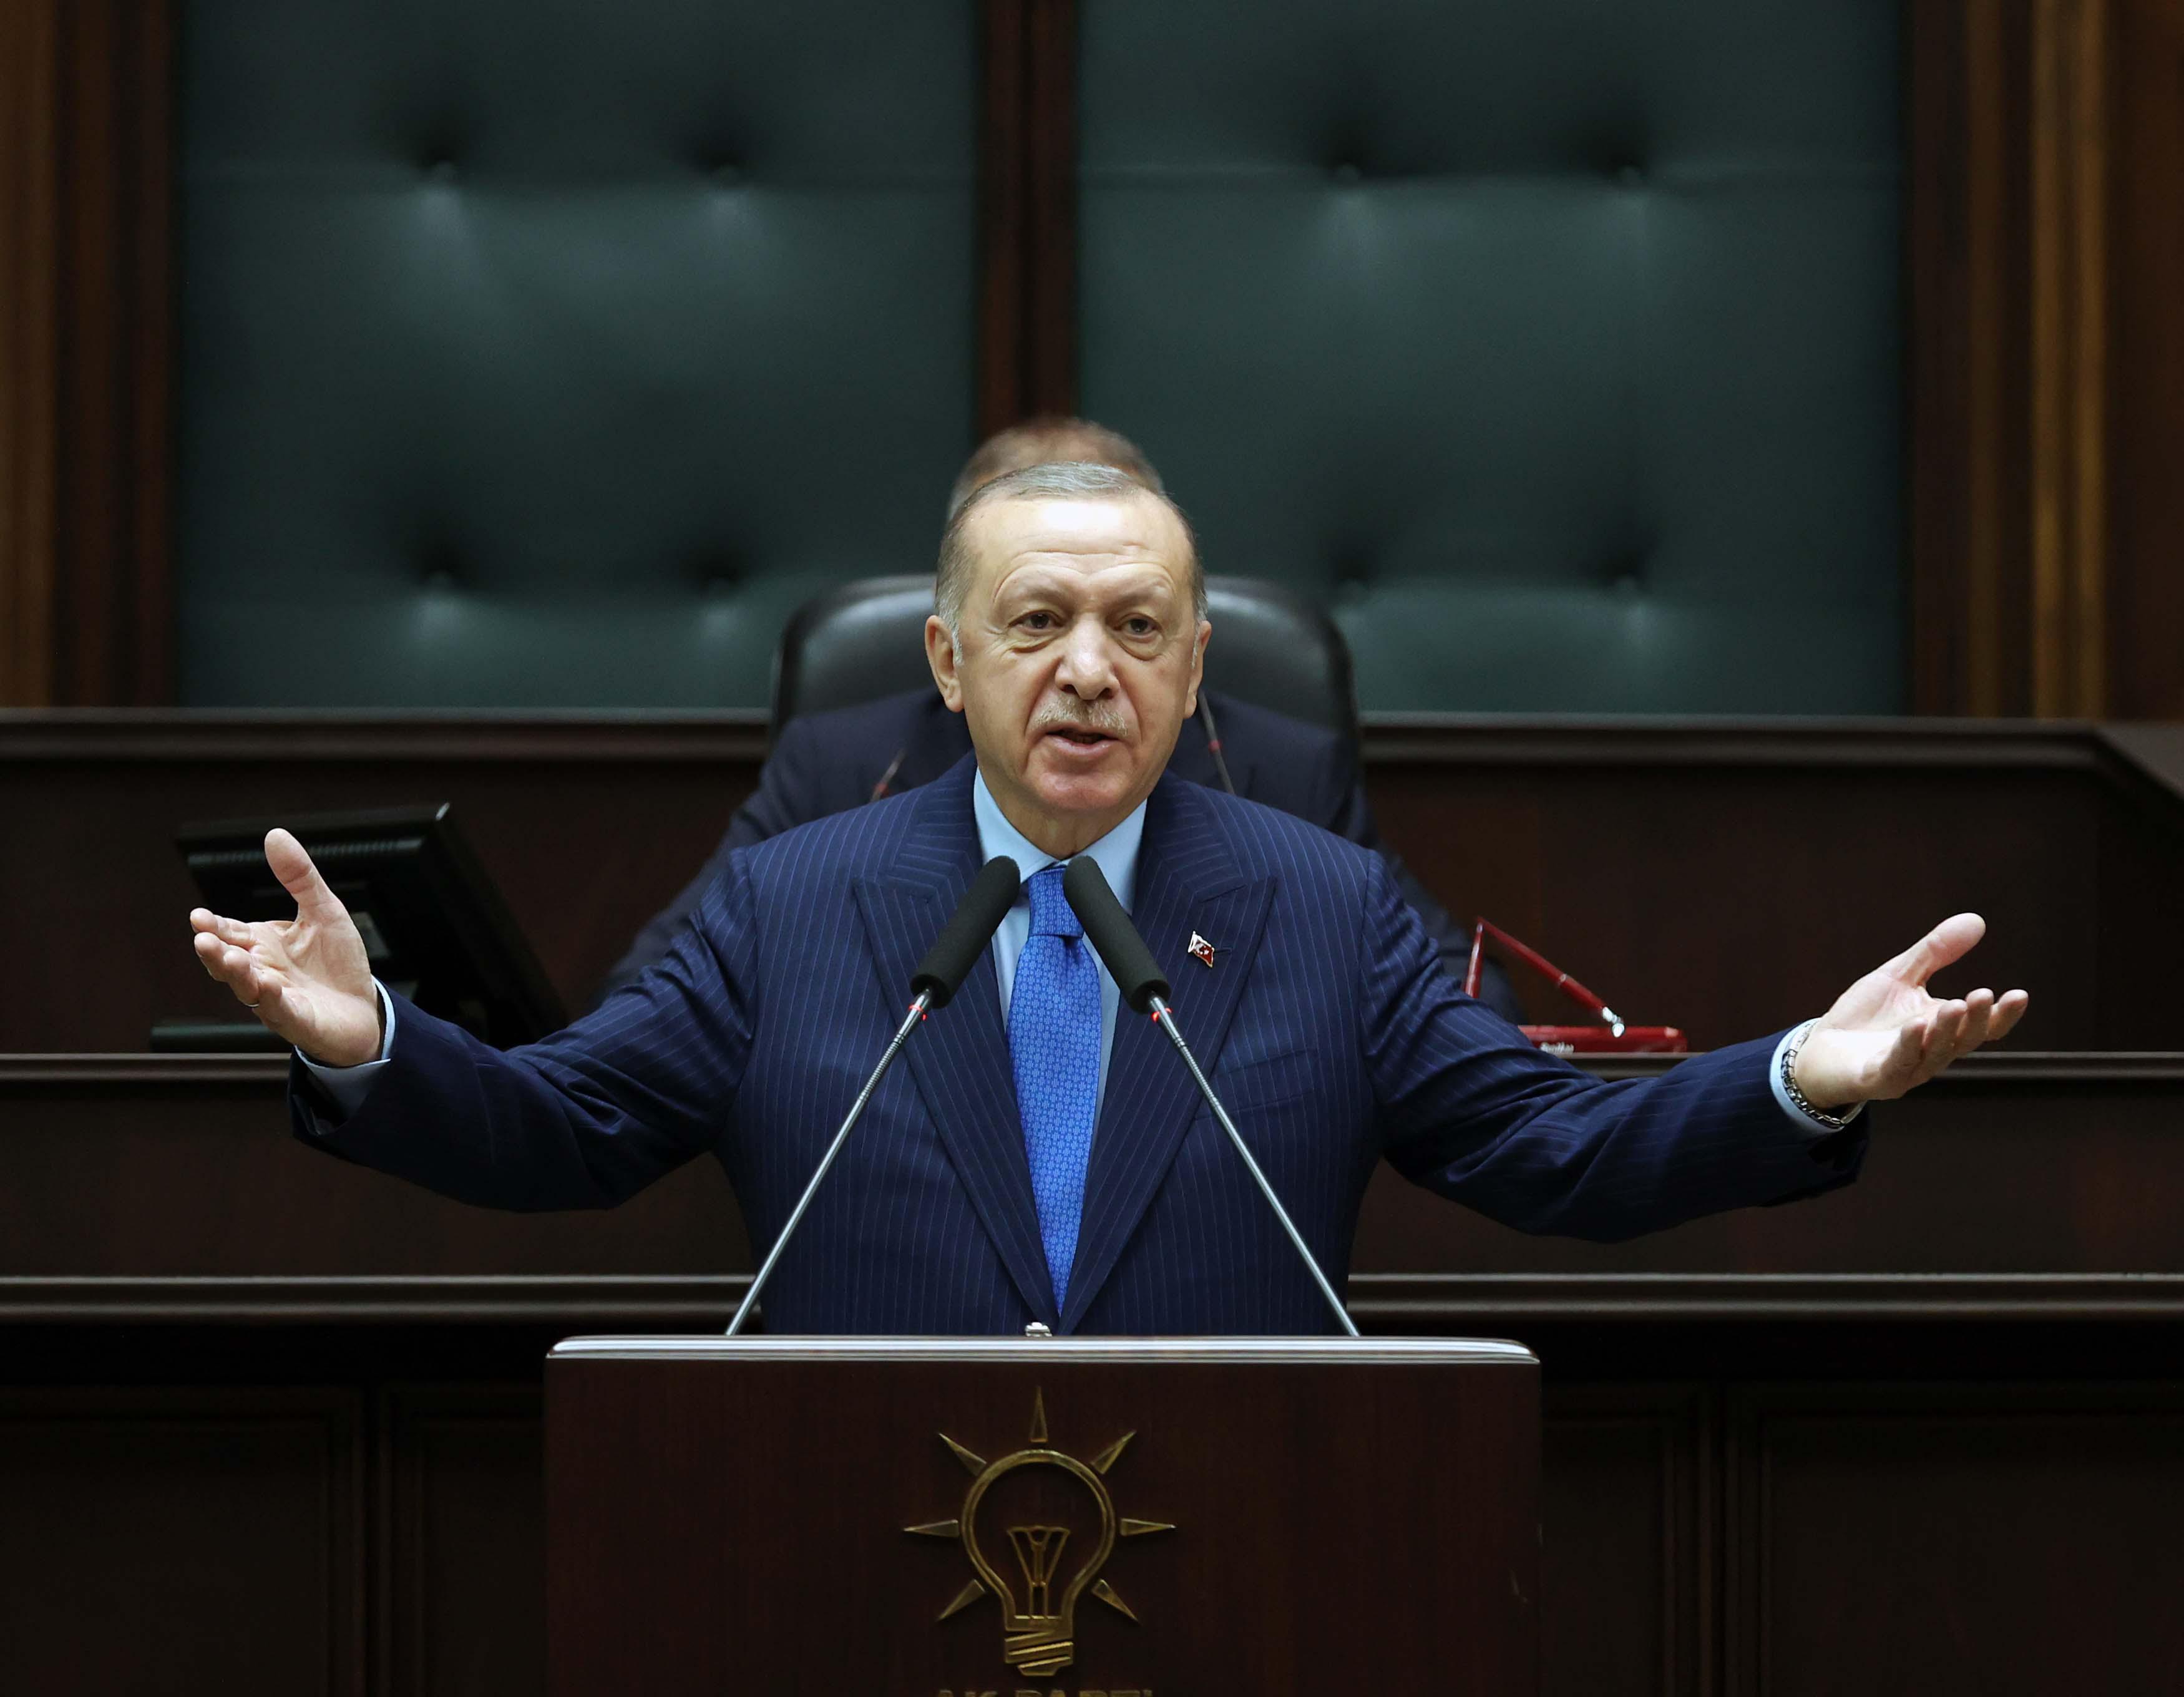 Son dakika: Kur Korumalı Vadeli TL Mevduatı açıklaması...Cumhurbaşkanı Erdoğan: Açıkladığımız program amacına ulaşmıştır